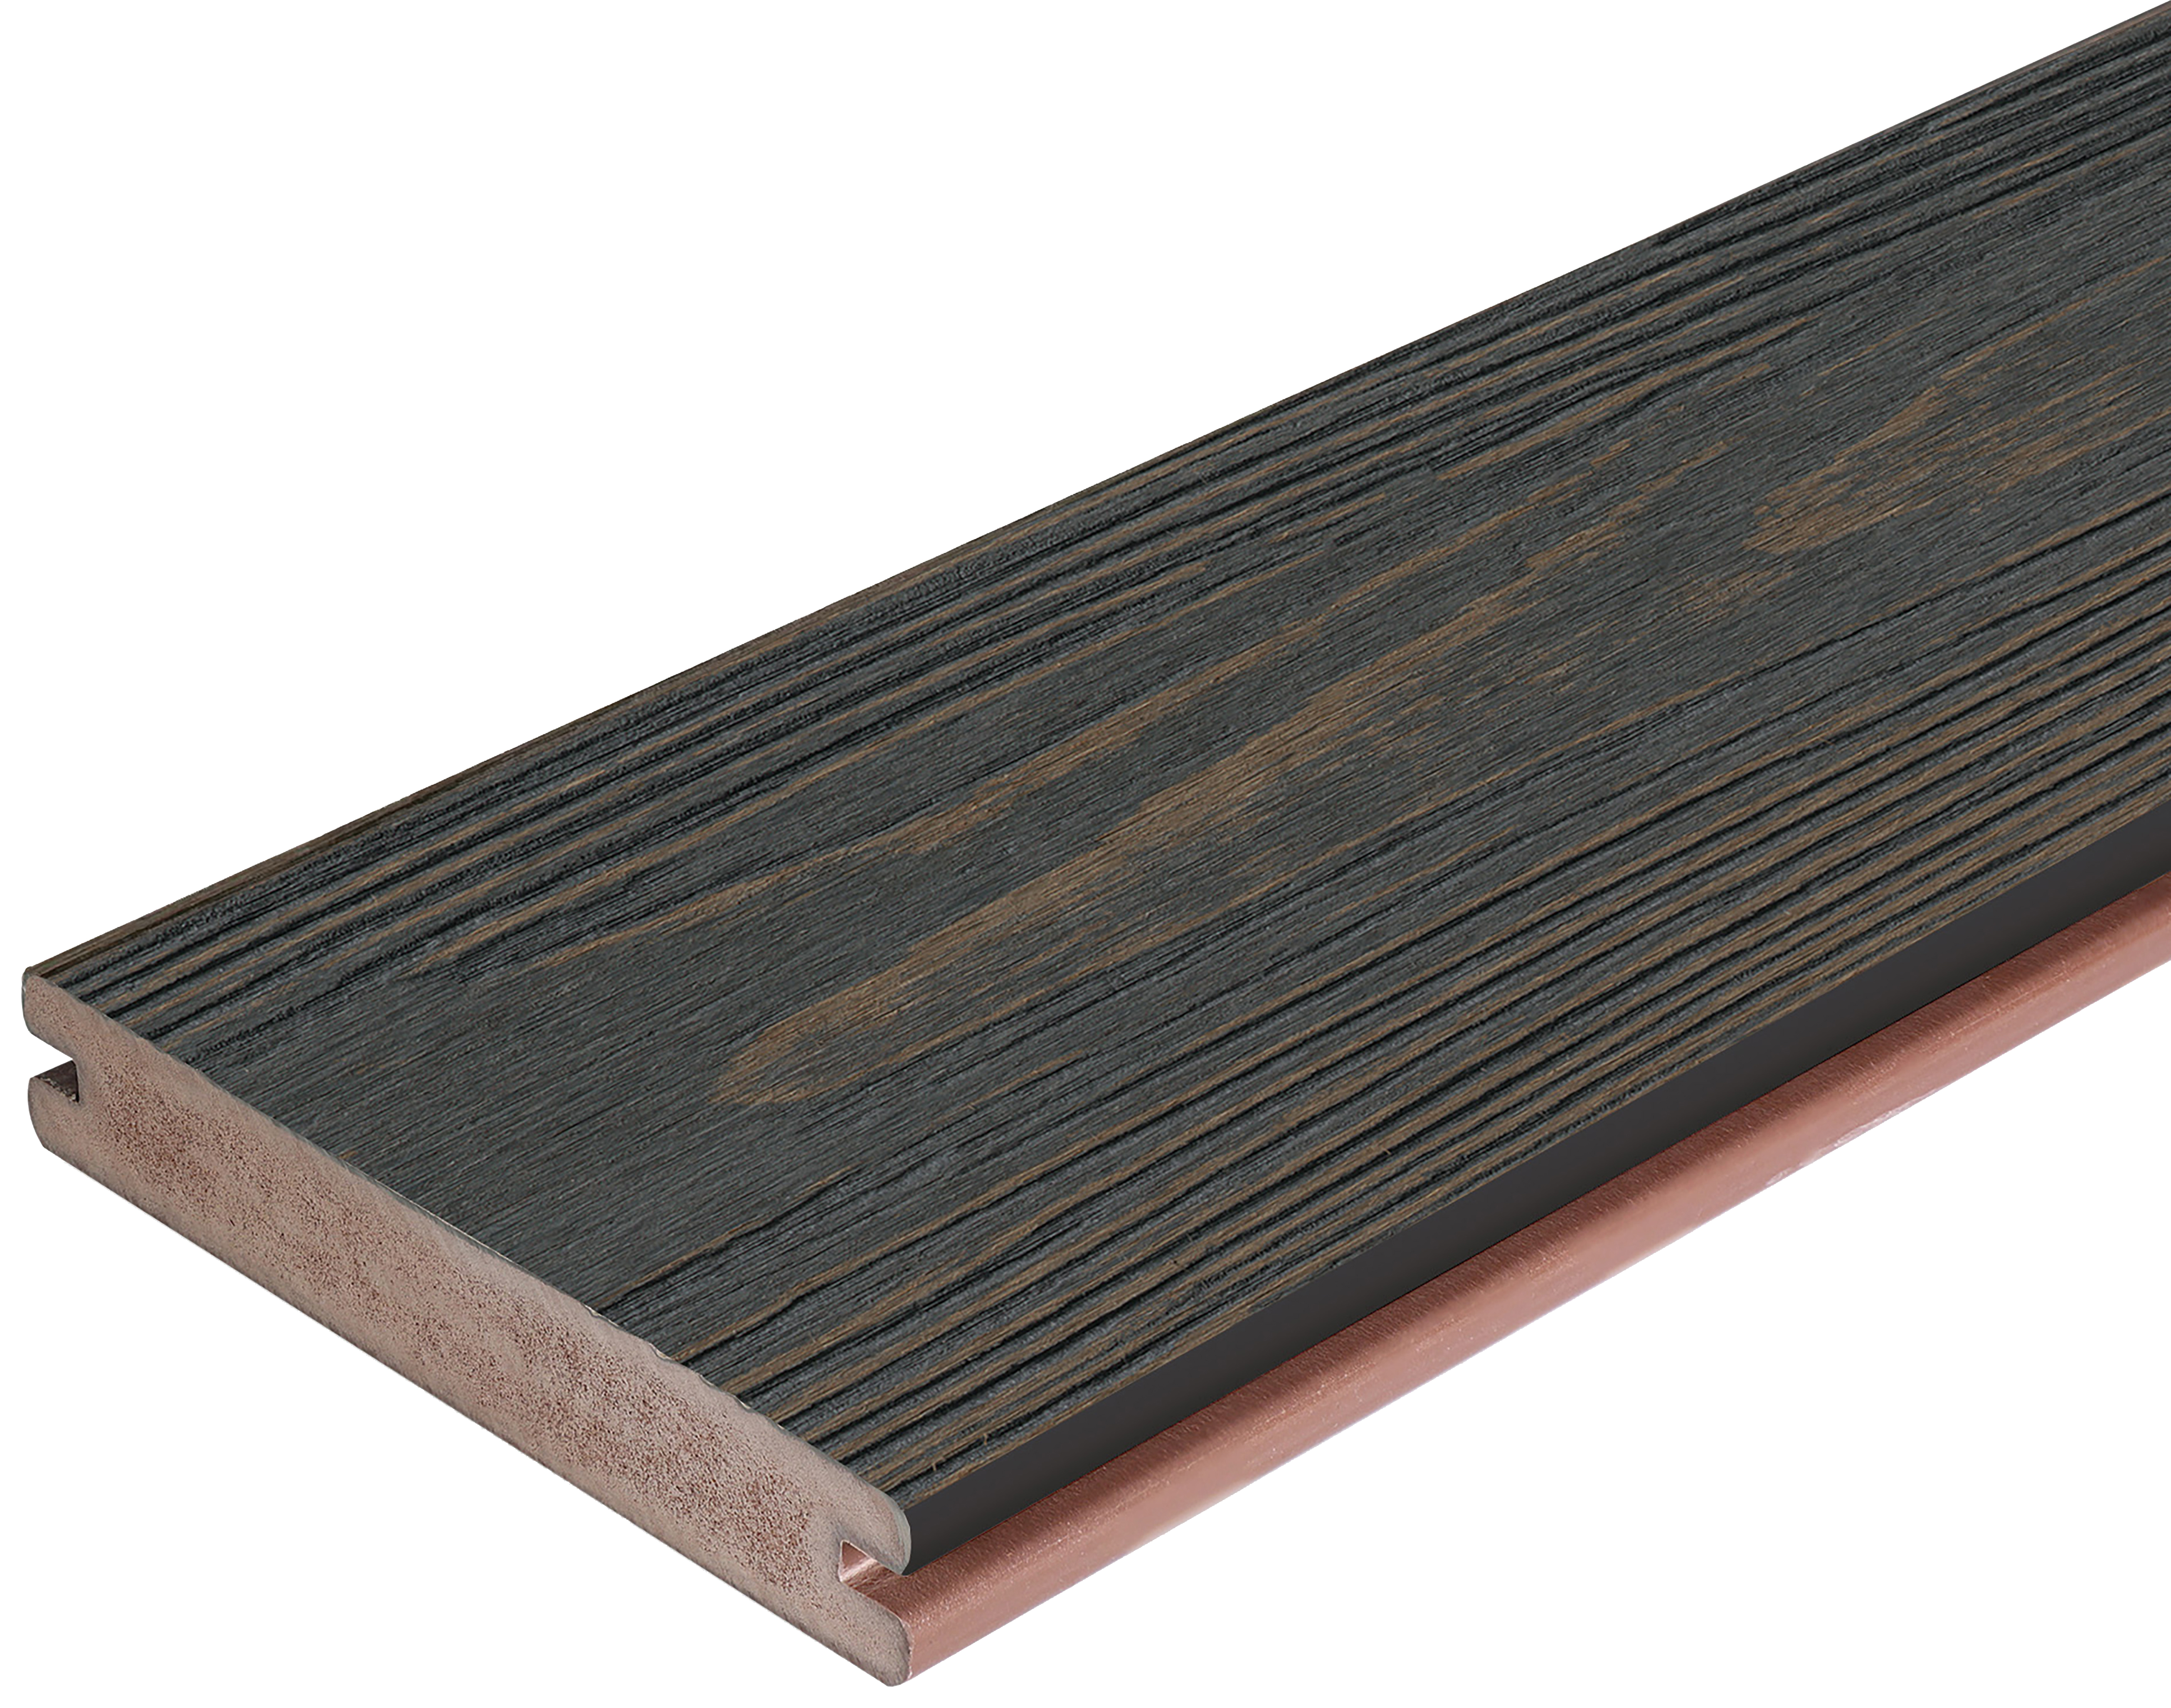 Image of Apex Carbonised Cedar Deckboard - 24 x 140 x 4800mm - Pack of 2